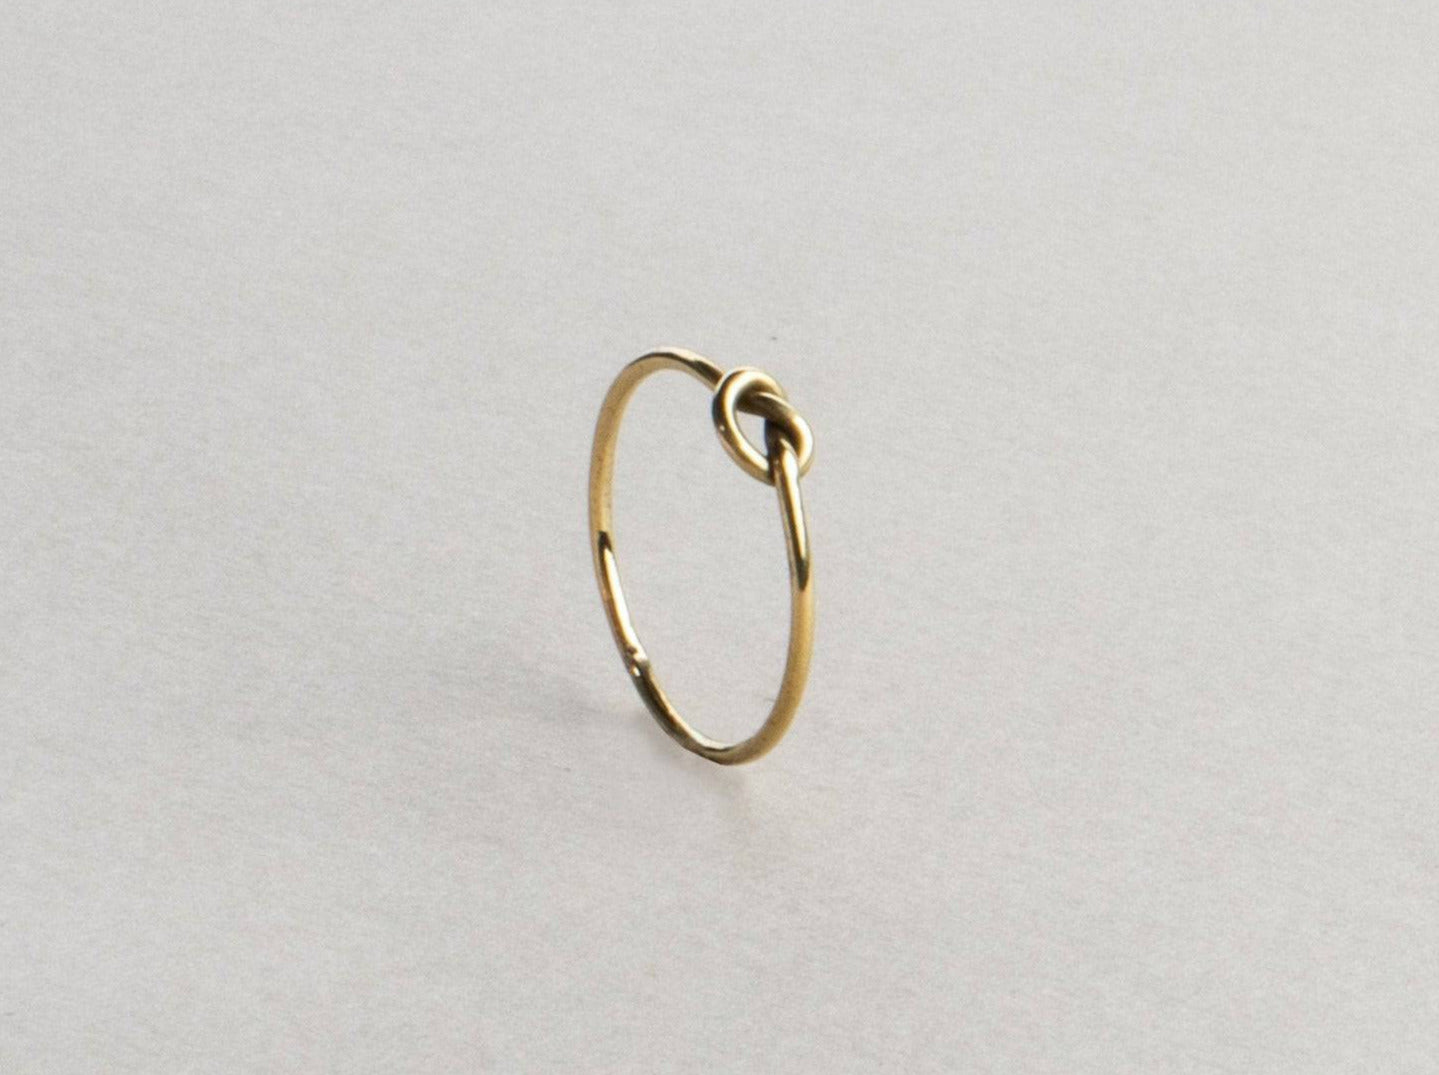 Feiner Ring mit Knoten gold handgemacht - NooeBerlin